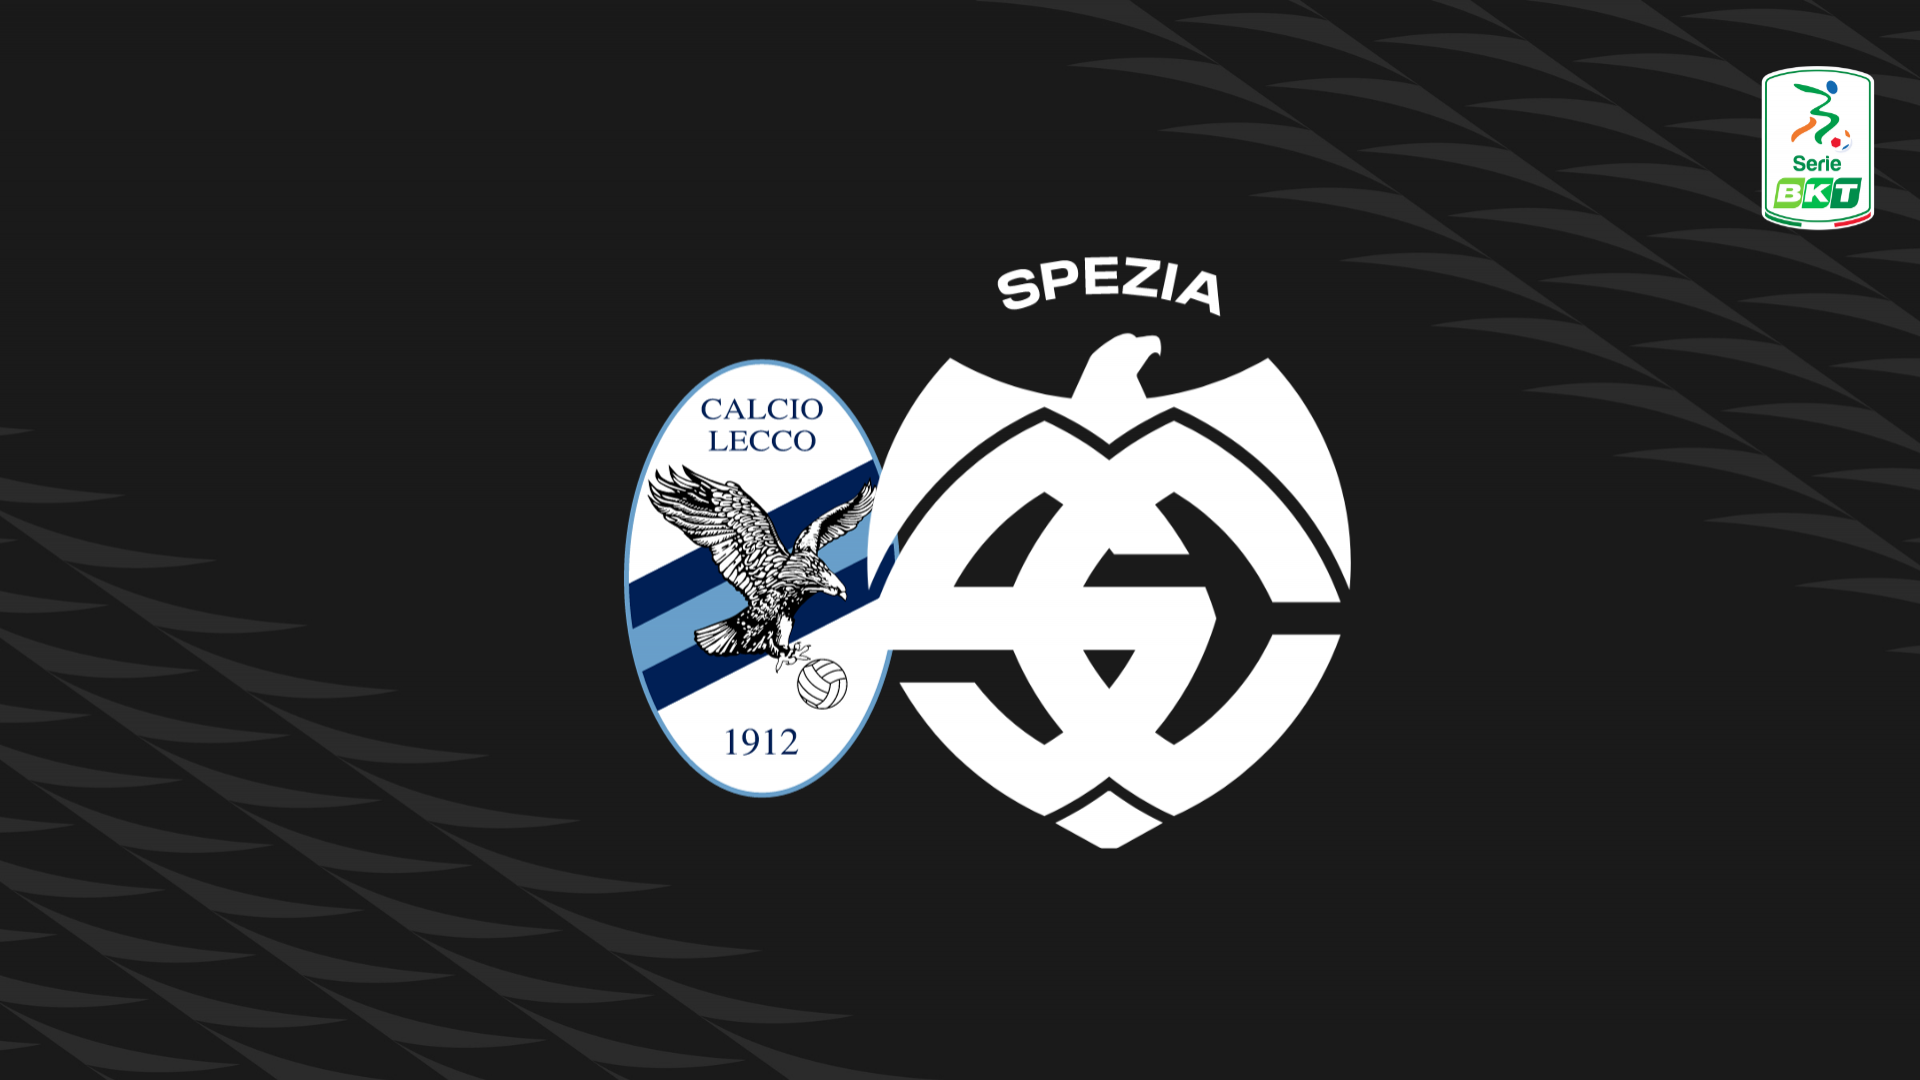 Serie BKT: Lecco-Spezia 0-0